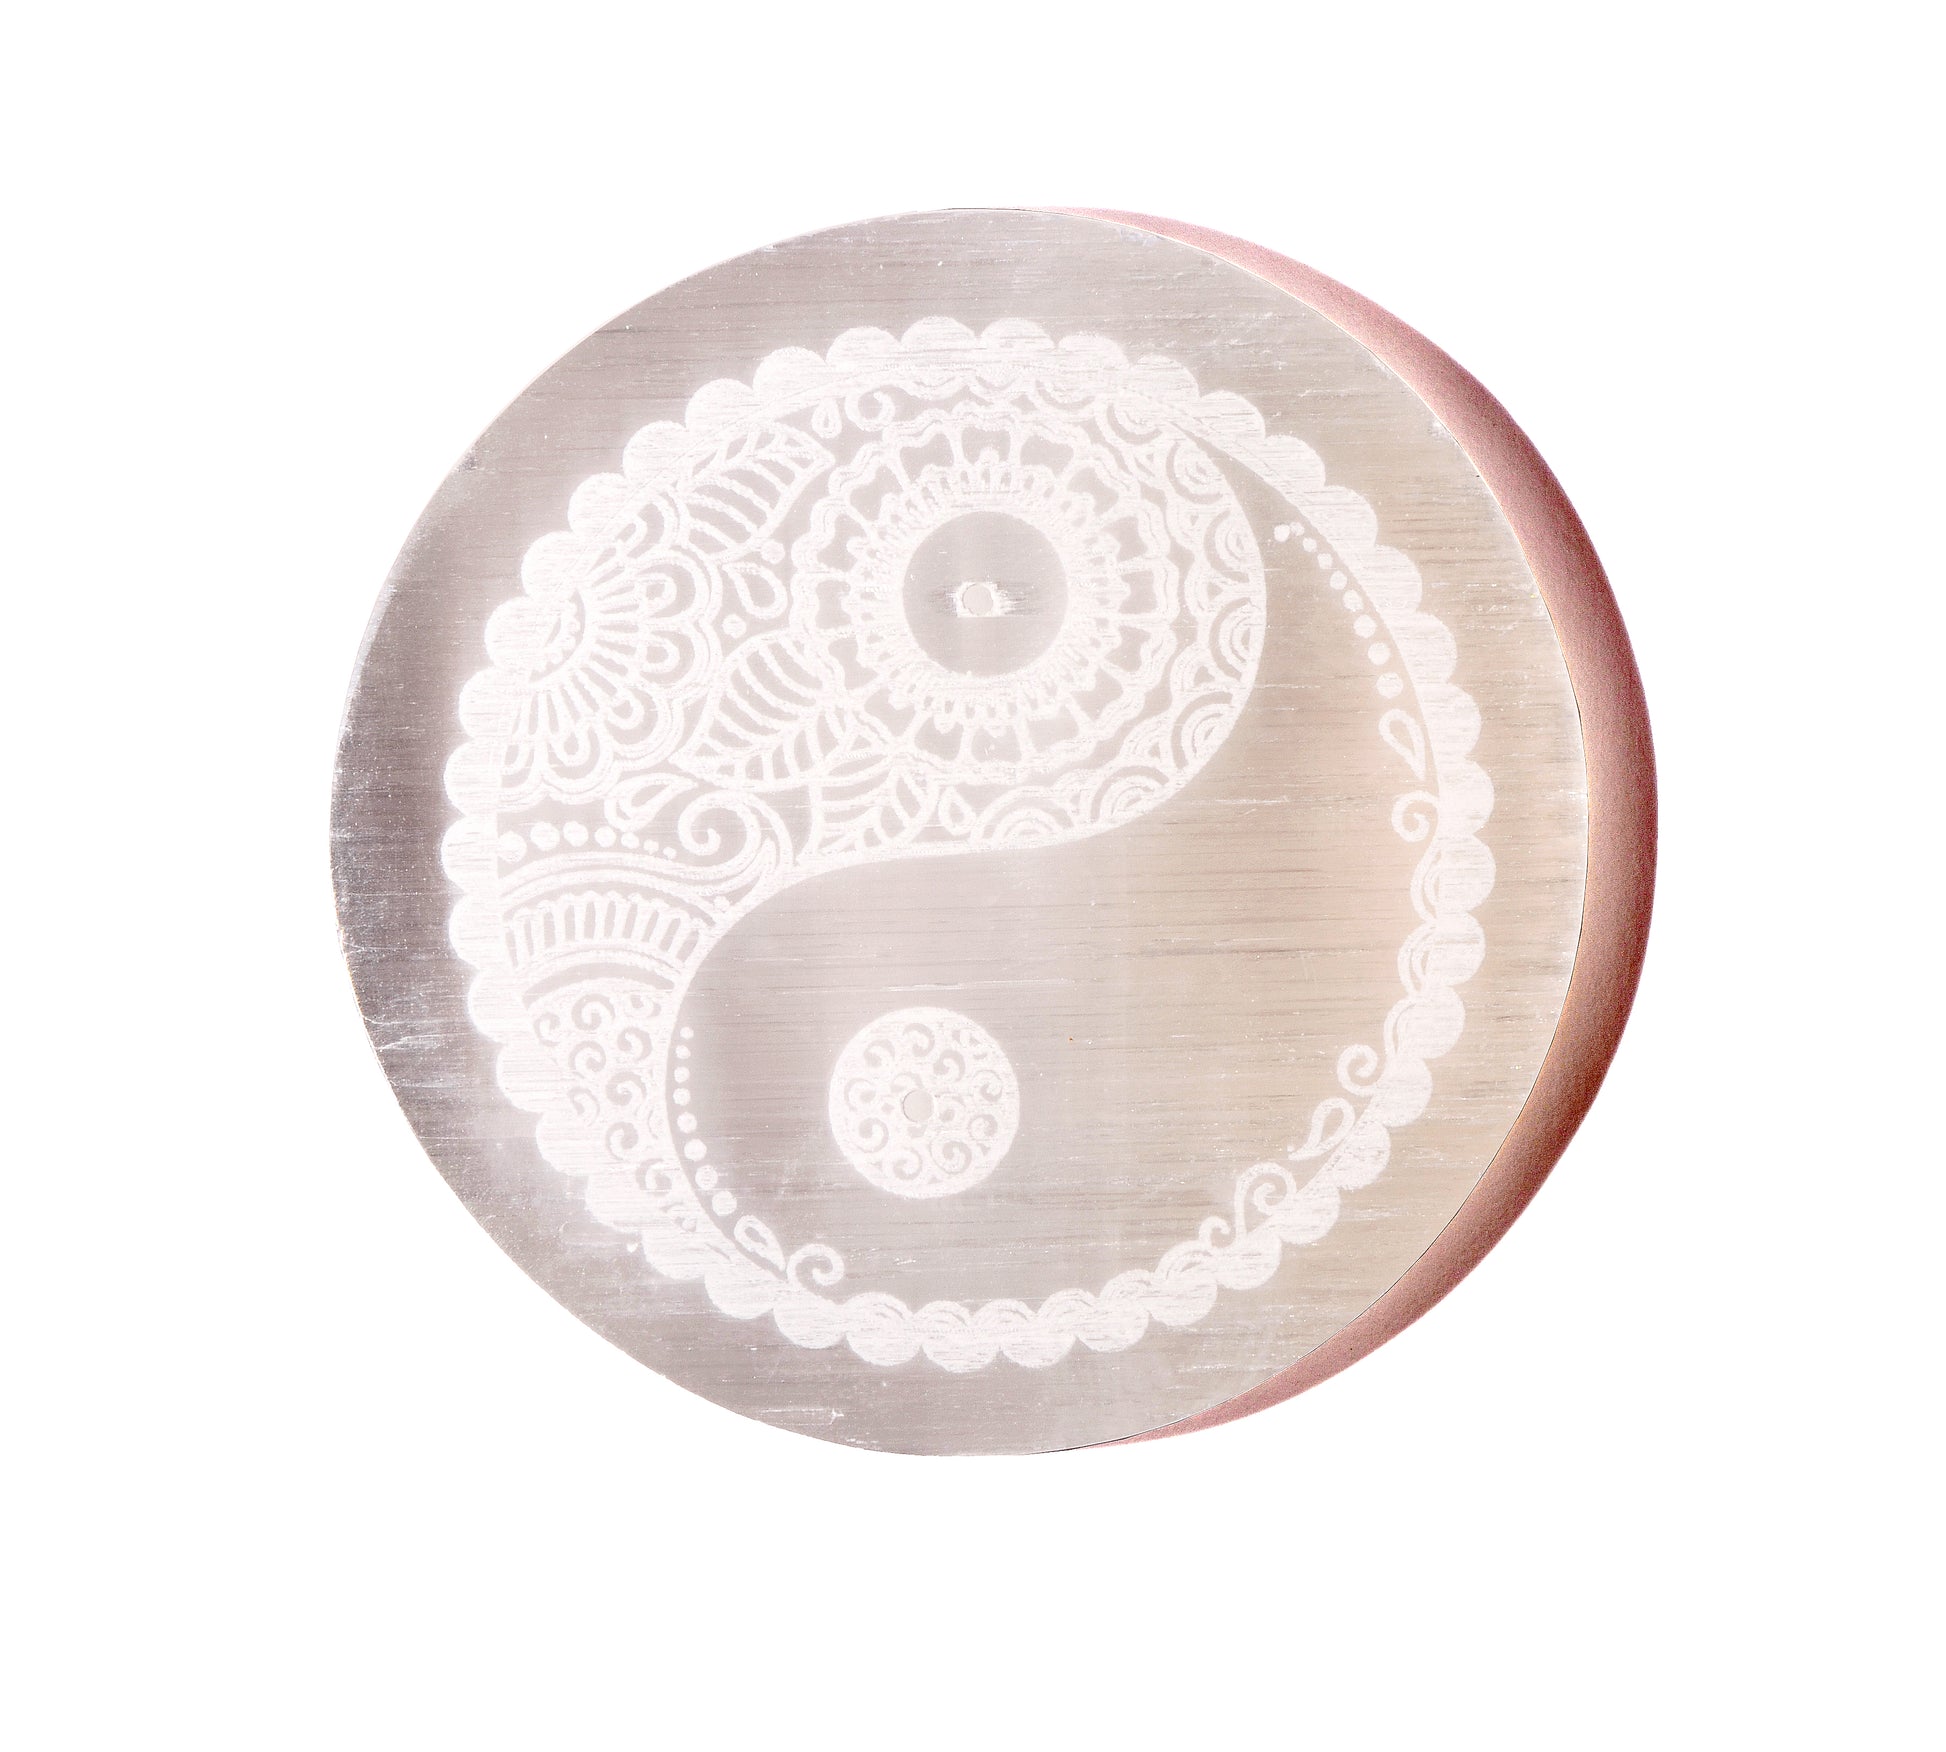 Selenite Charging Plate - Yin Yang Symbol - Crystal Carving